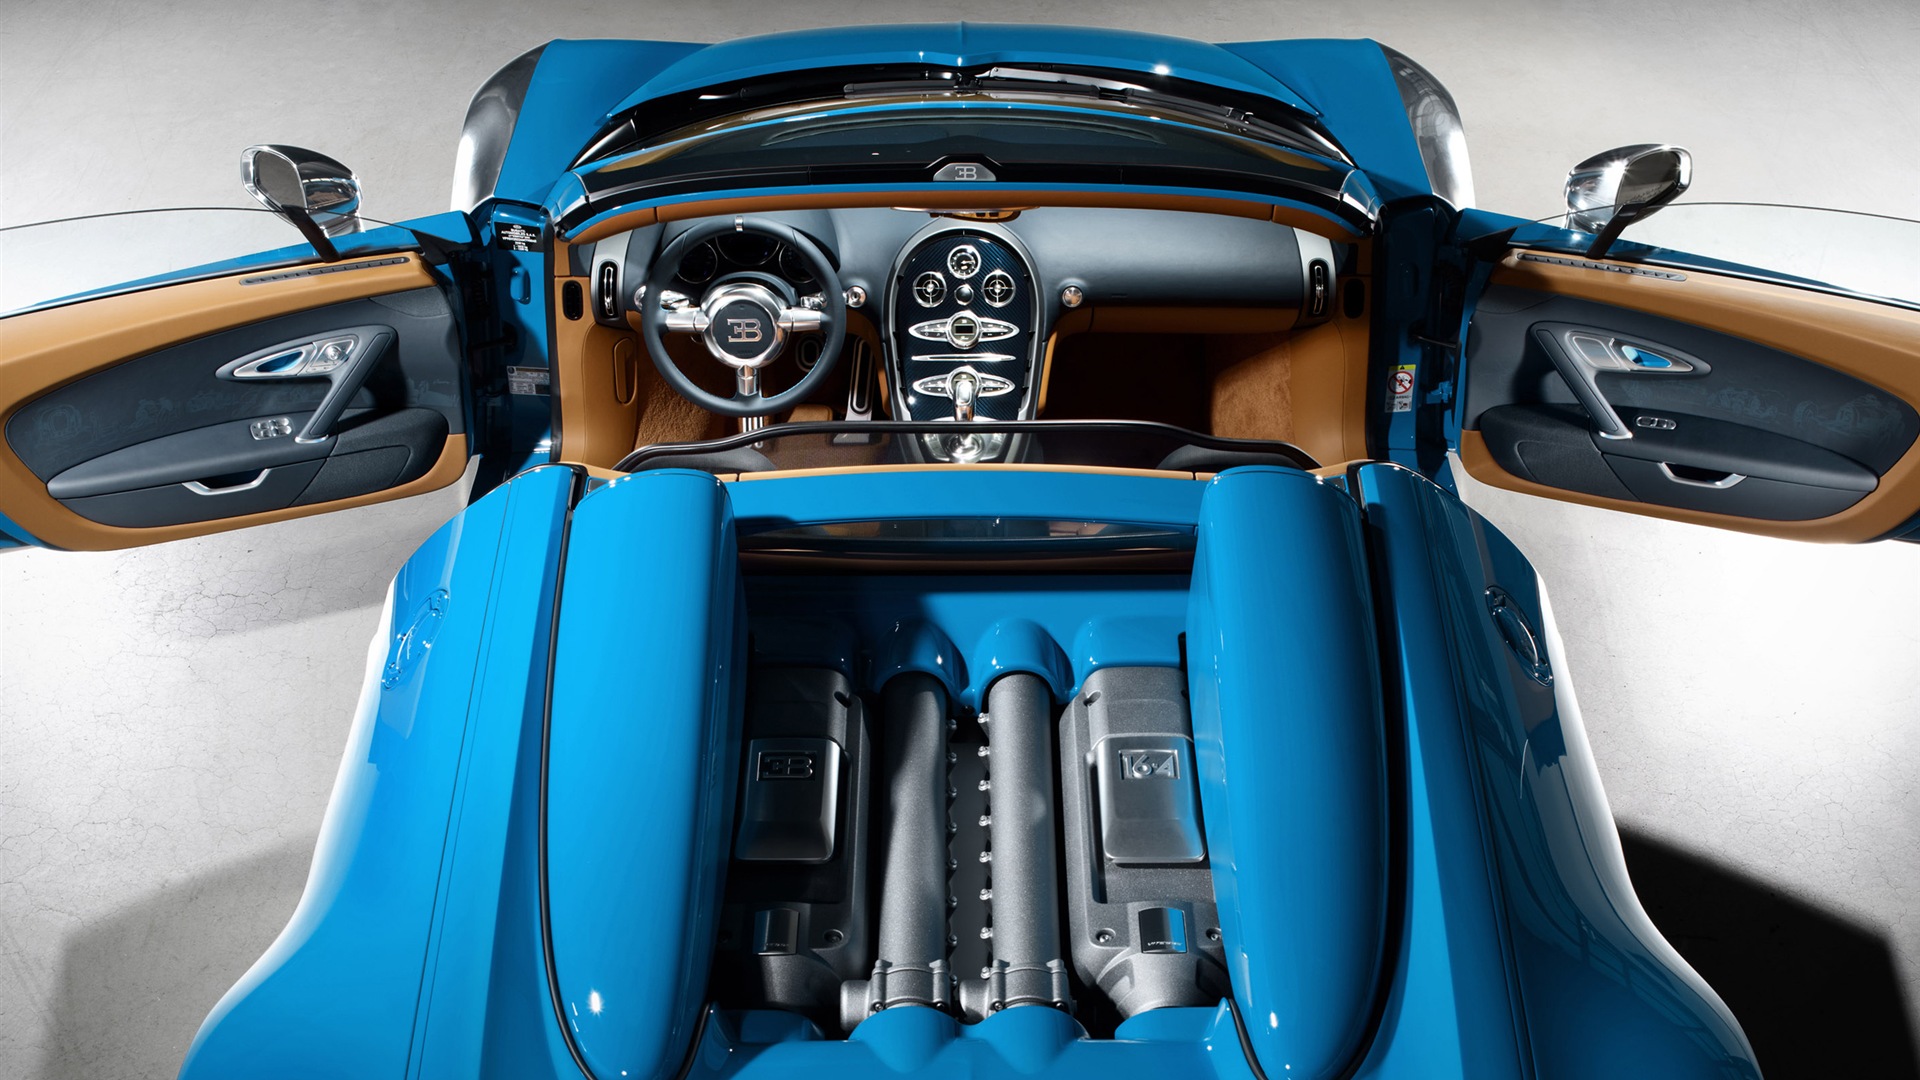 2013 Bugatti Veyron 16.4 Grand Sport Vitesse supercar fondos de pantalla de alta definición #13 - 1920x1080